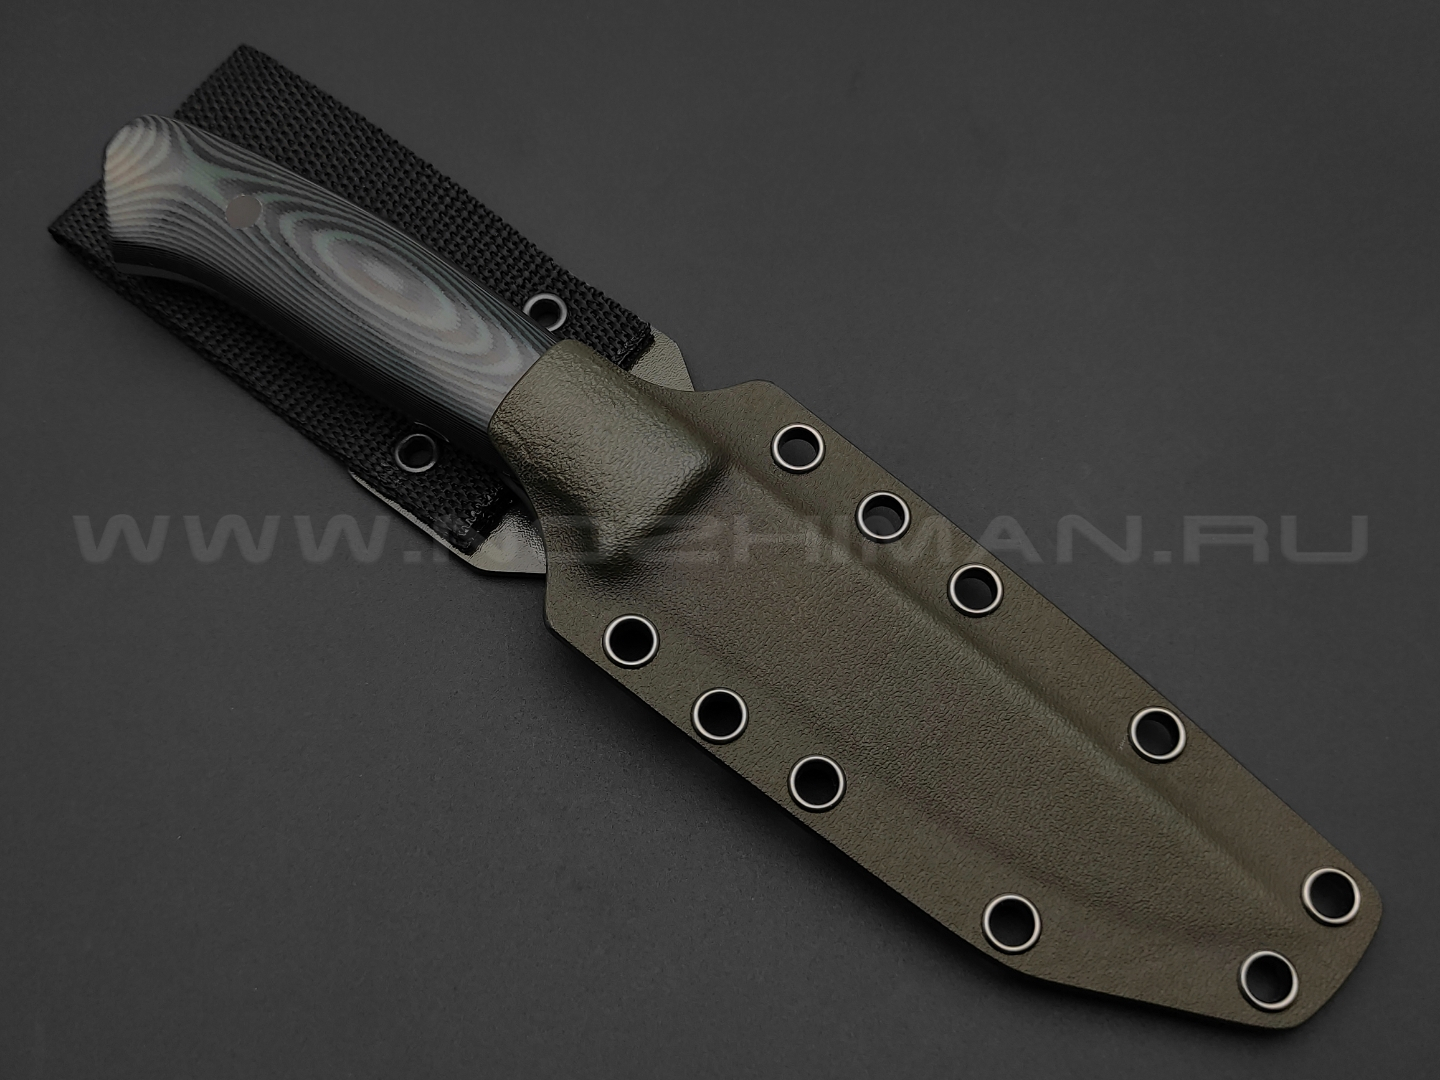 Apus Knives нож Fishman сталь N690, рукоять G10 black & green, ножны kydex khaki